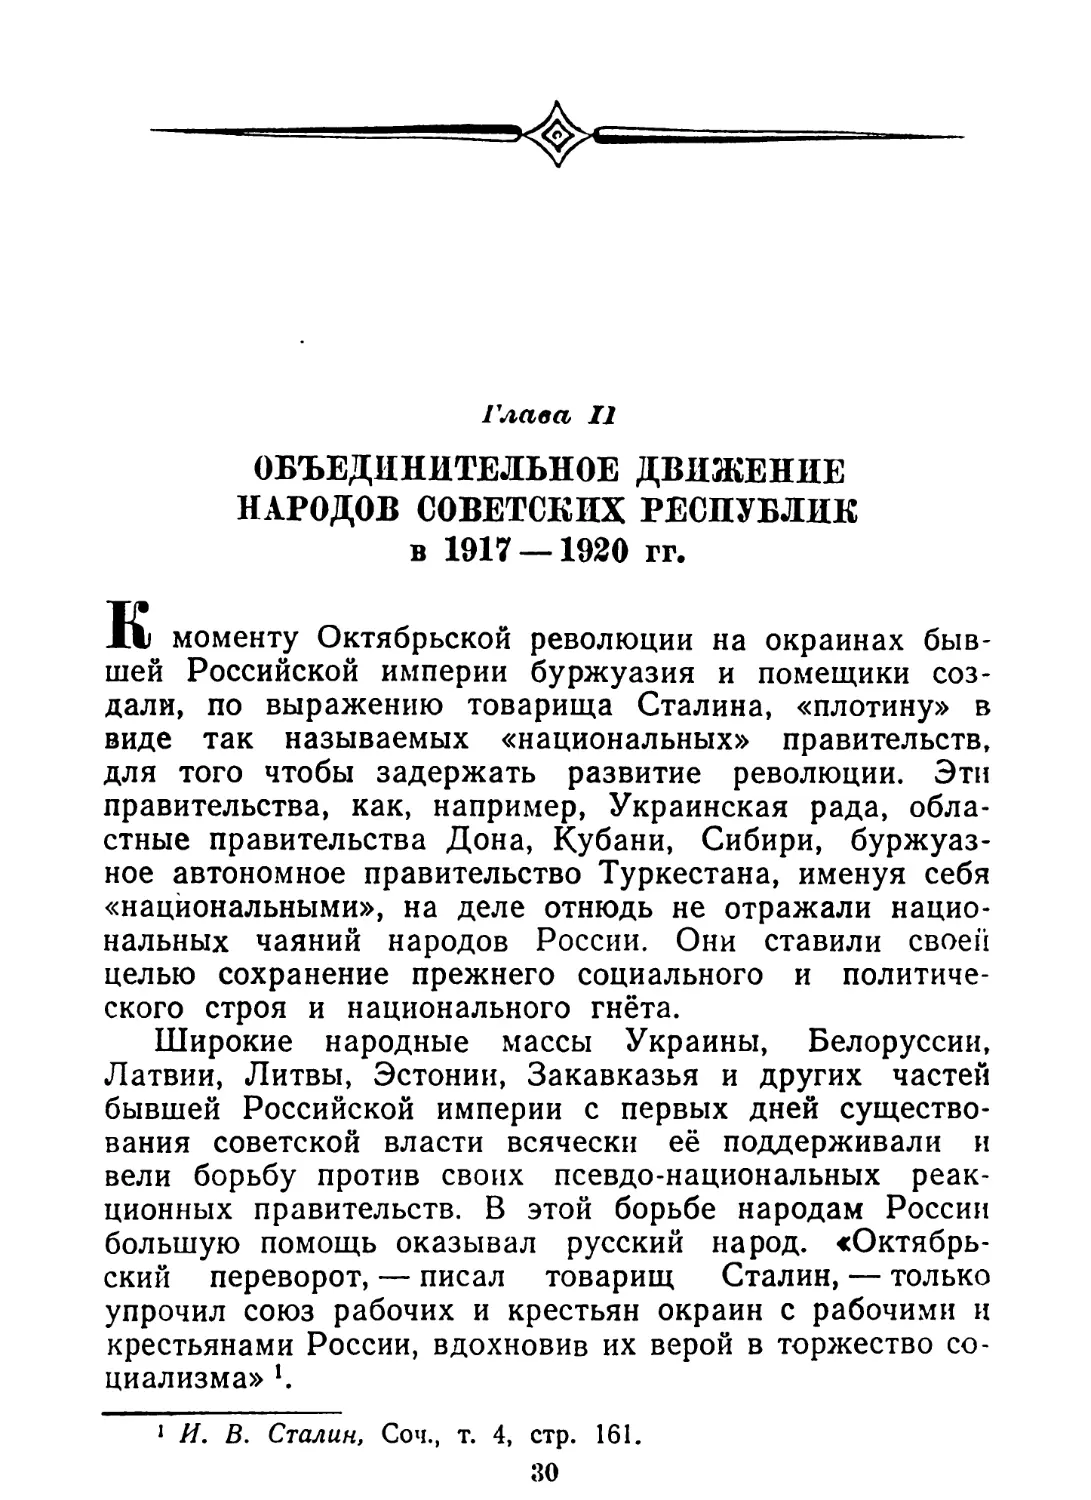 Глава II. Объединительное движение народов советских республик в 1917—1920 гг